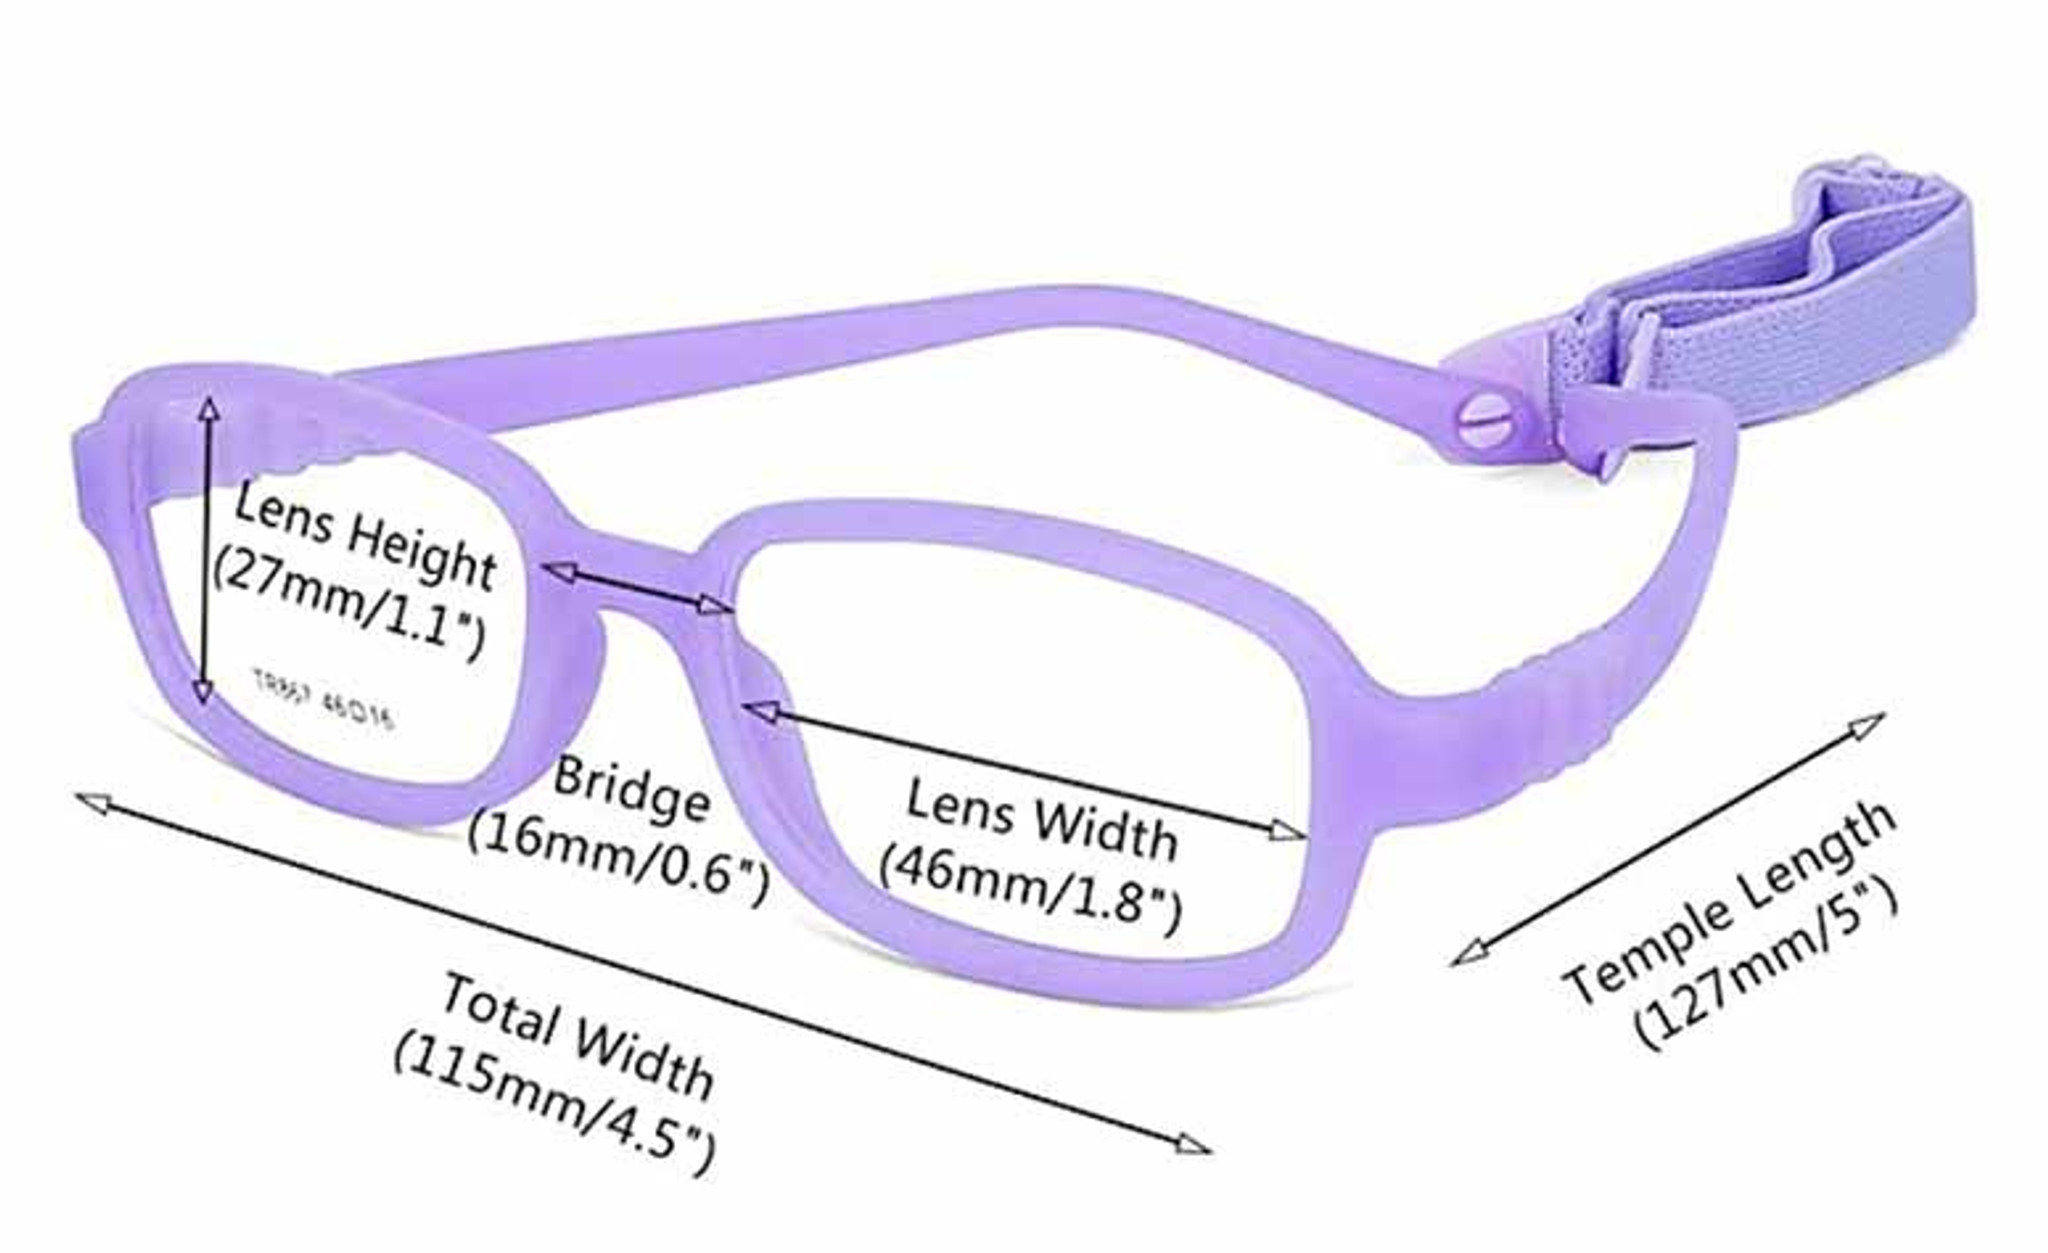 Strap Bridges for Eyeglasses